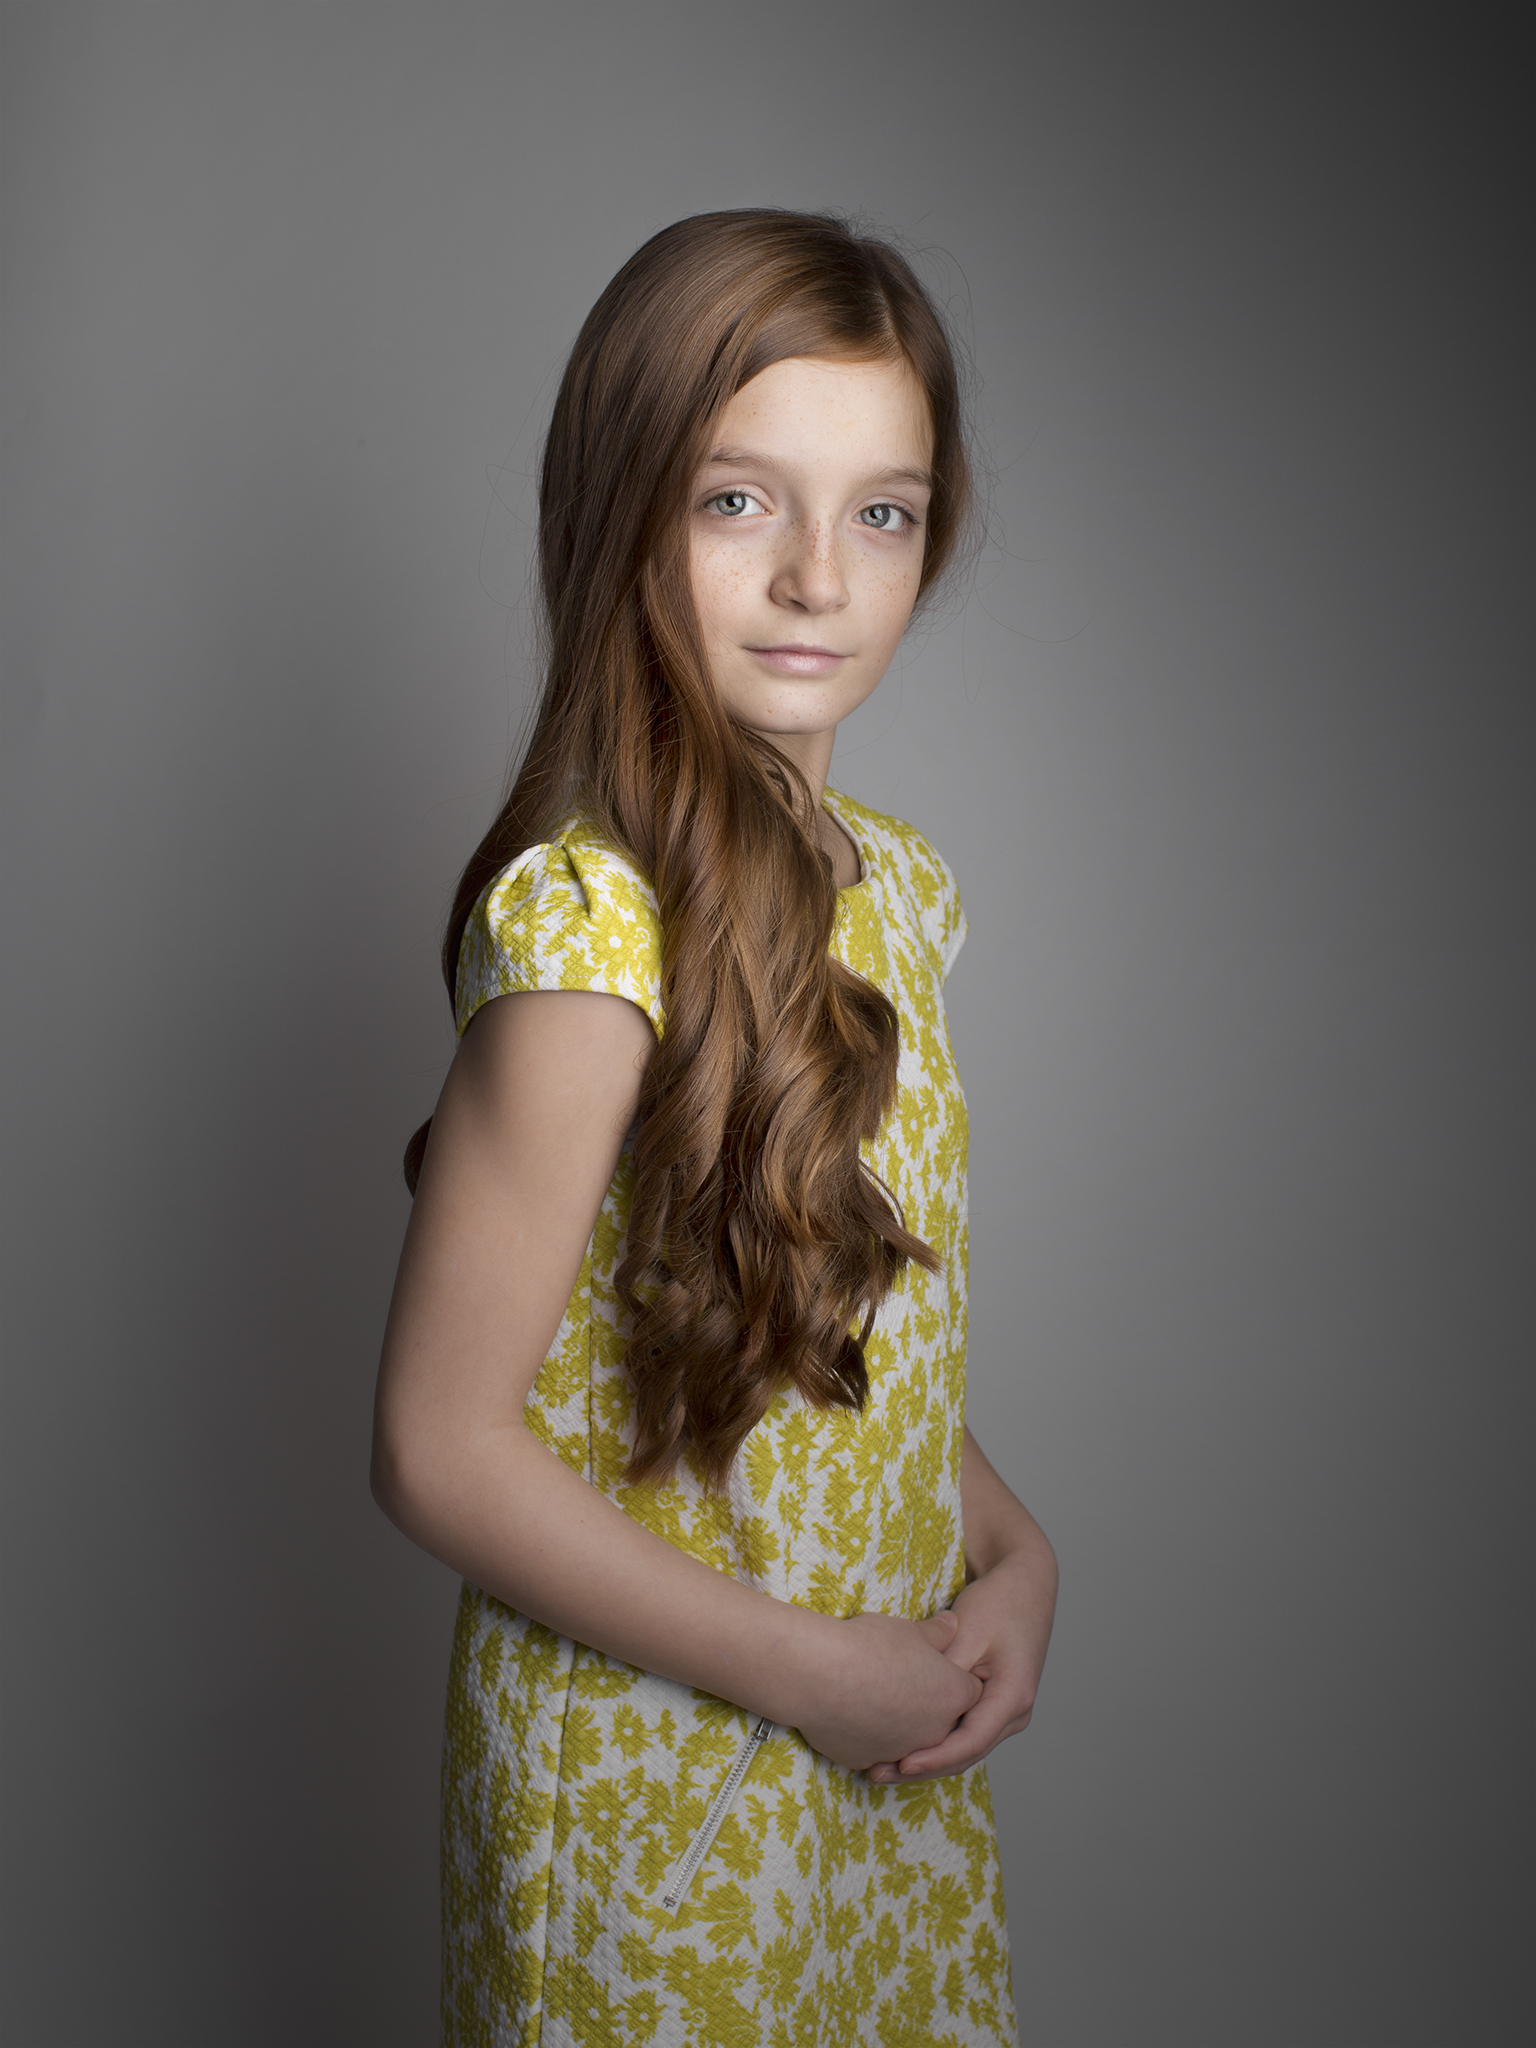 elizabethg_photography_hertfordshire_fineart_child_portrait_model_morgan_6.jpg